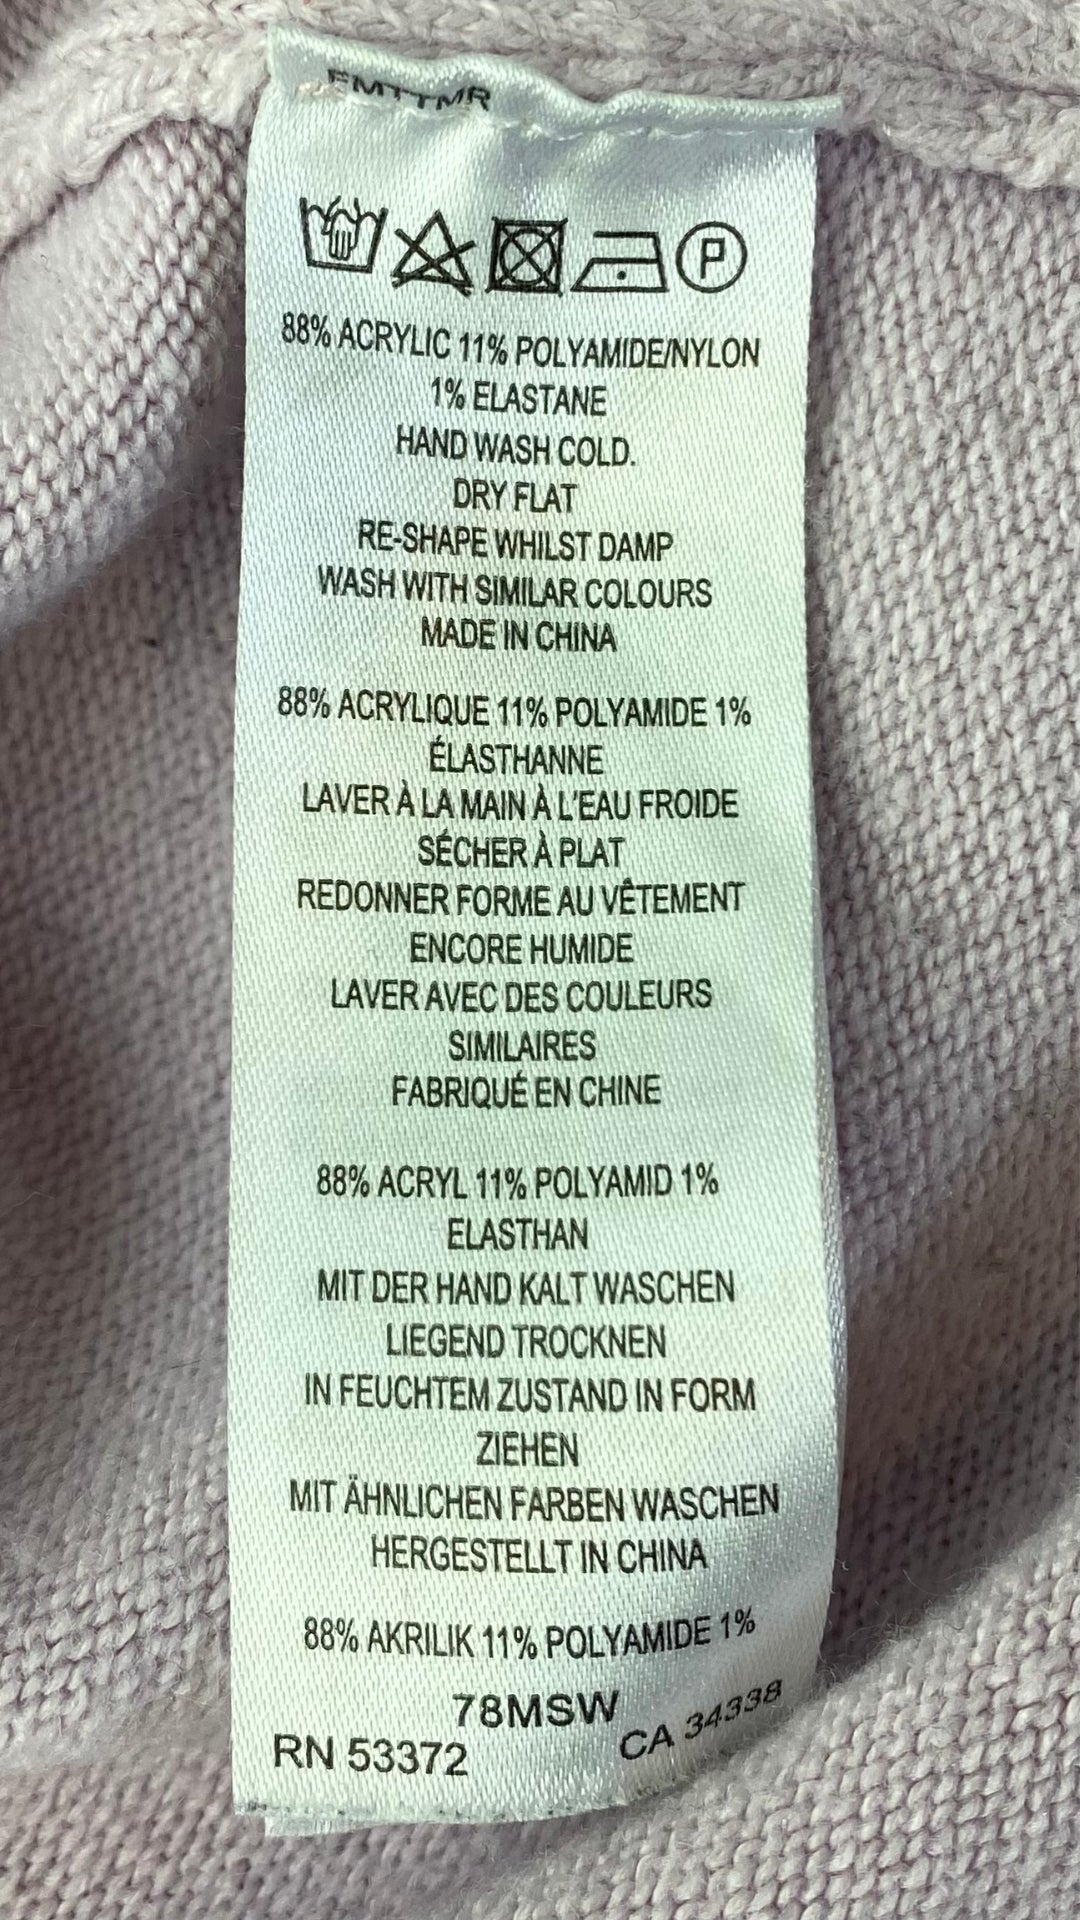 Chandail French Connection ample en tricot lilas. Vue de l'étiquette d'entretien et composition.